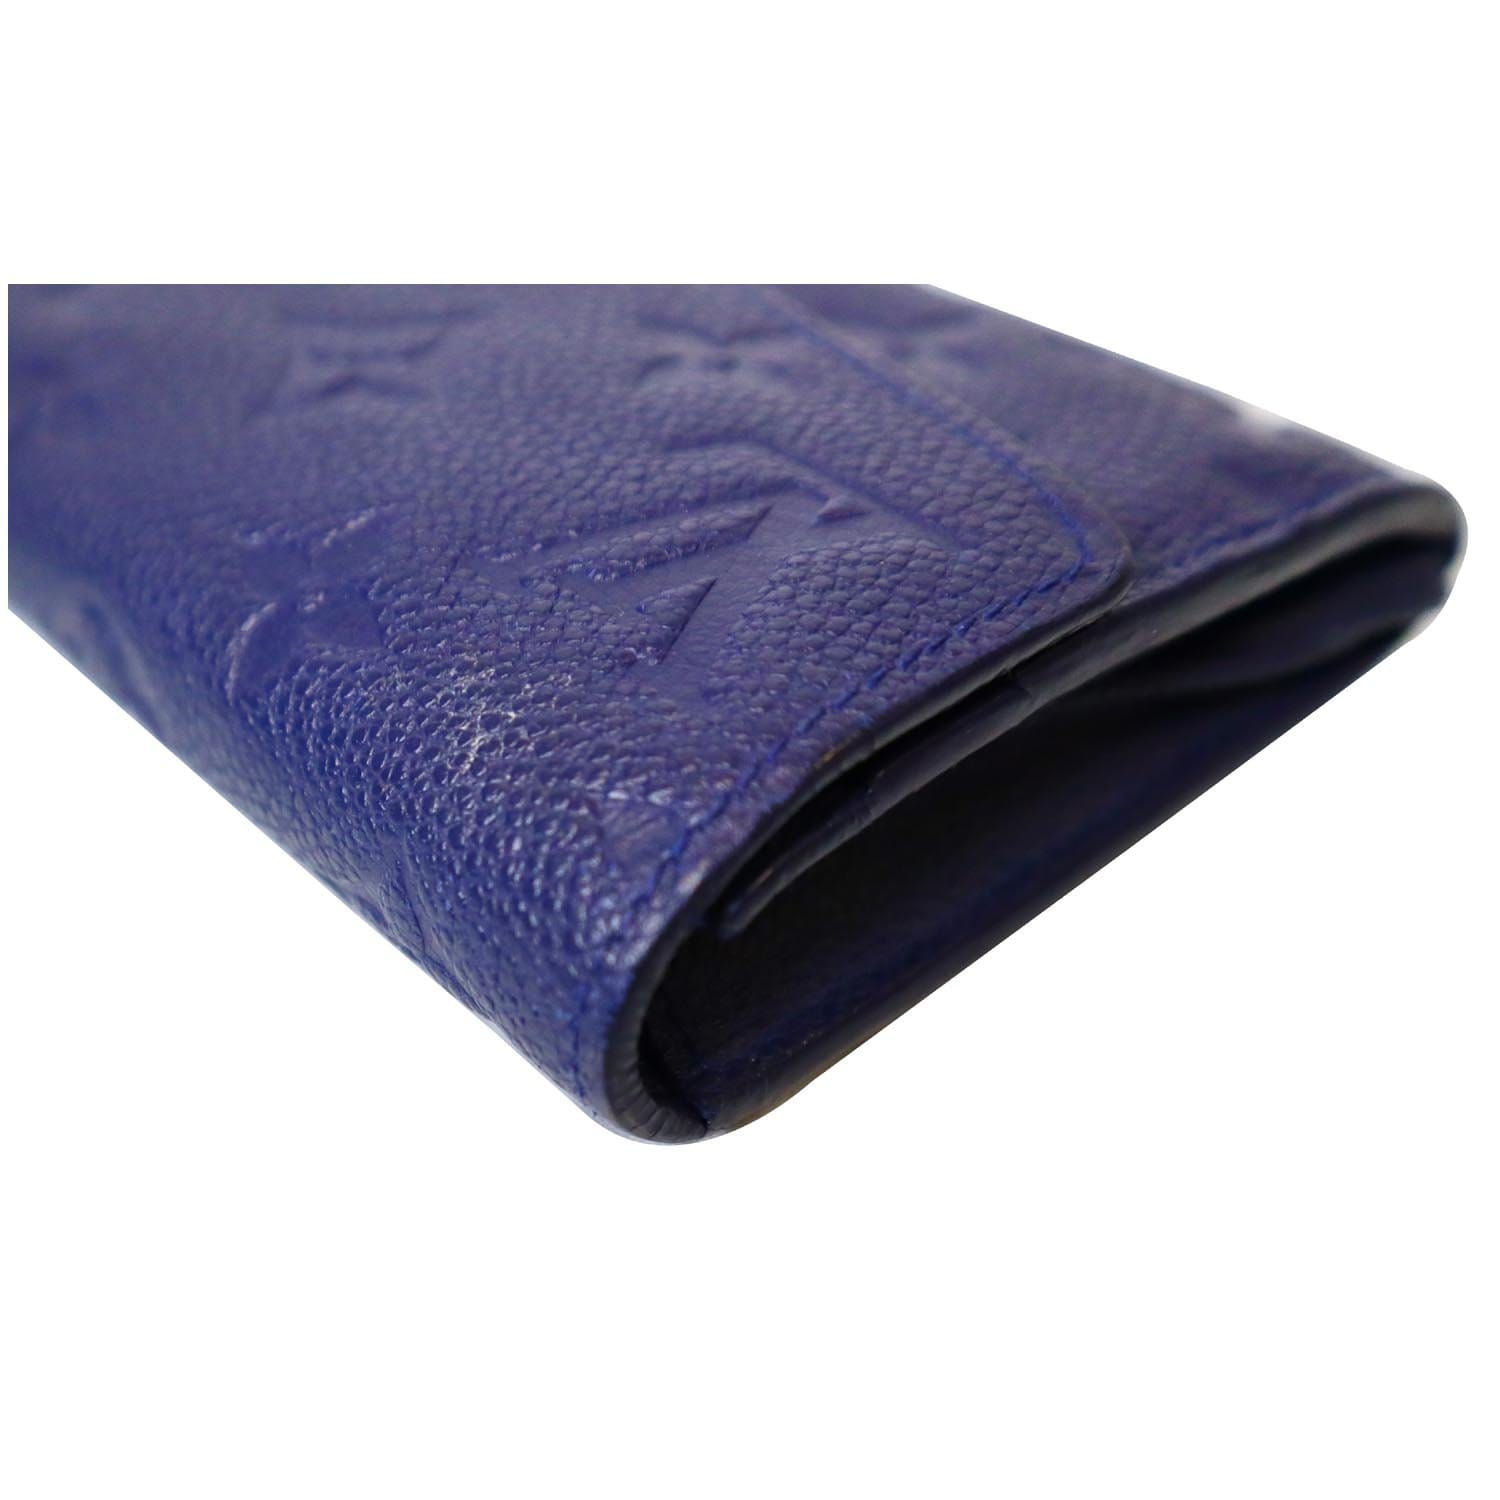 LOUIS VUITTON Virtuose Wallet Monogram Empreinte Leather Blue M60586 88BX157